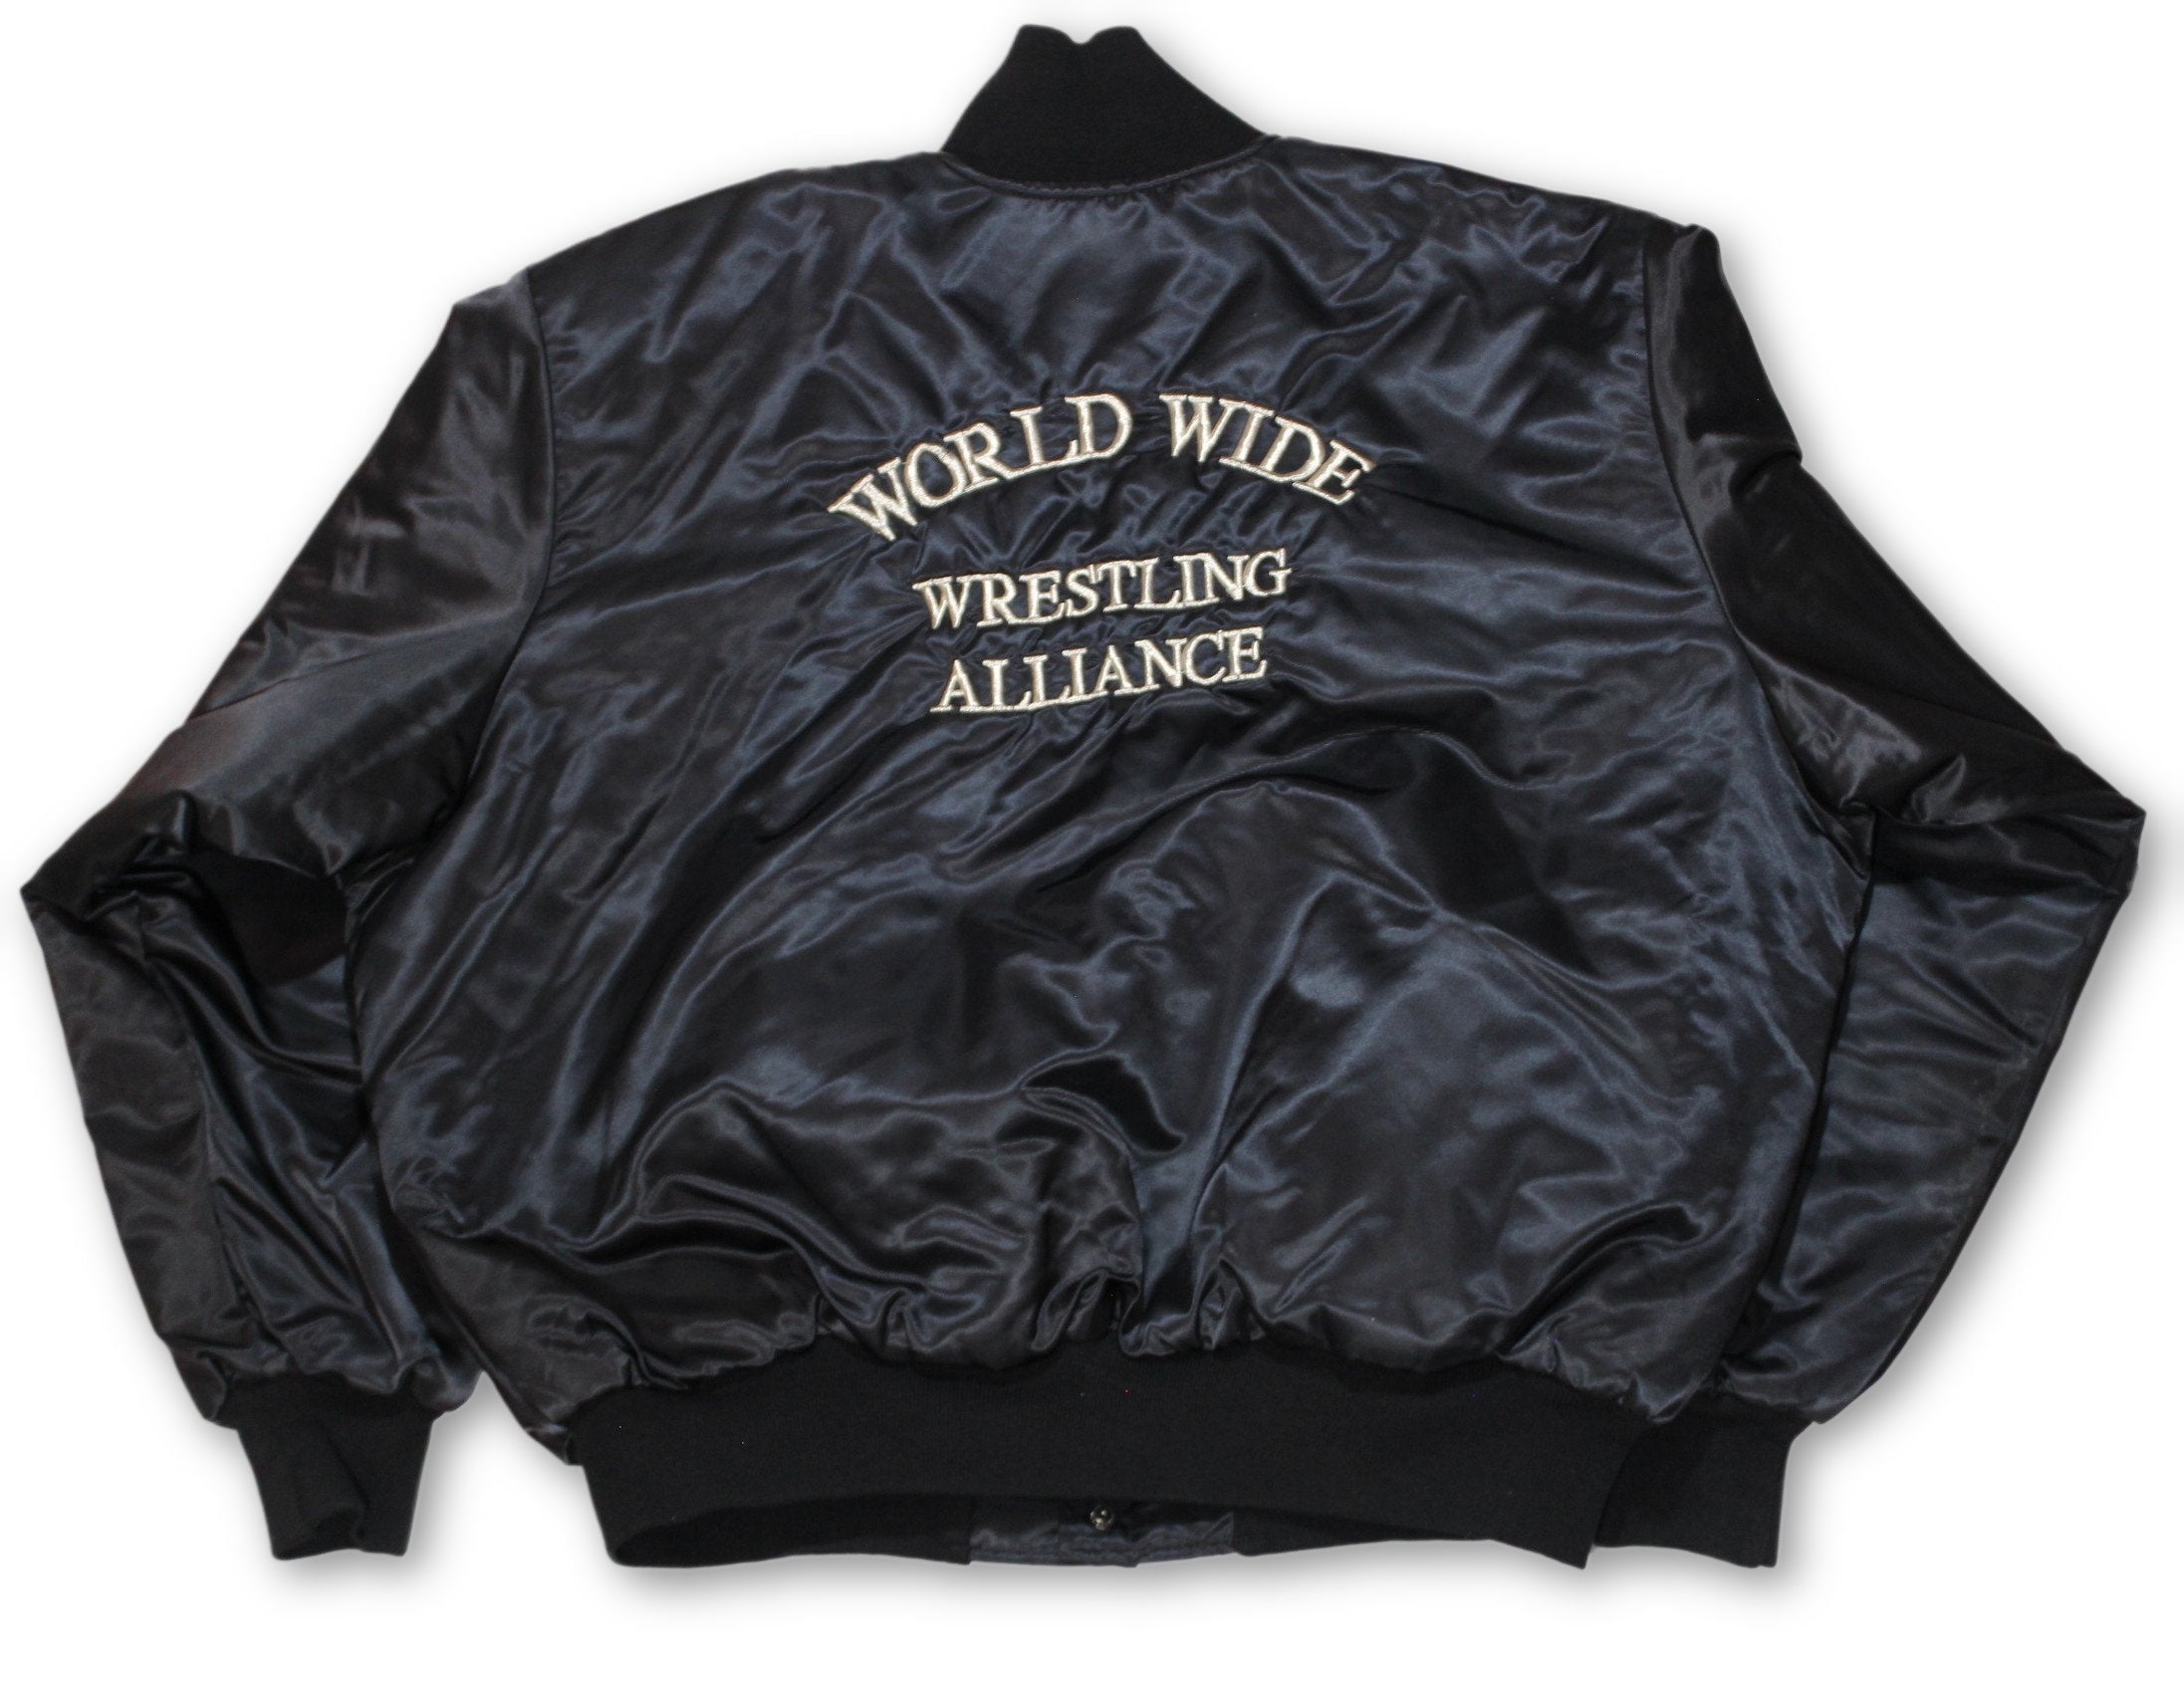 Vintage Felco Athletic Wear John Handley Judges Wool Varsity Jacket